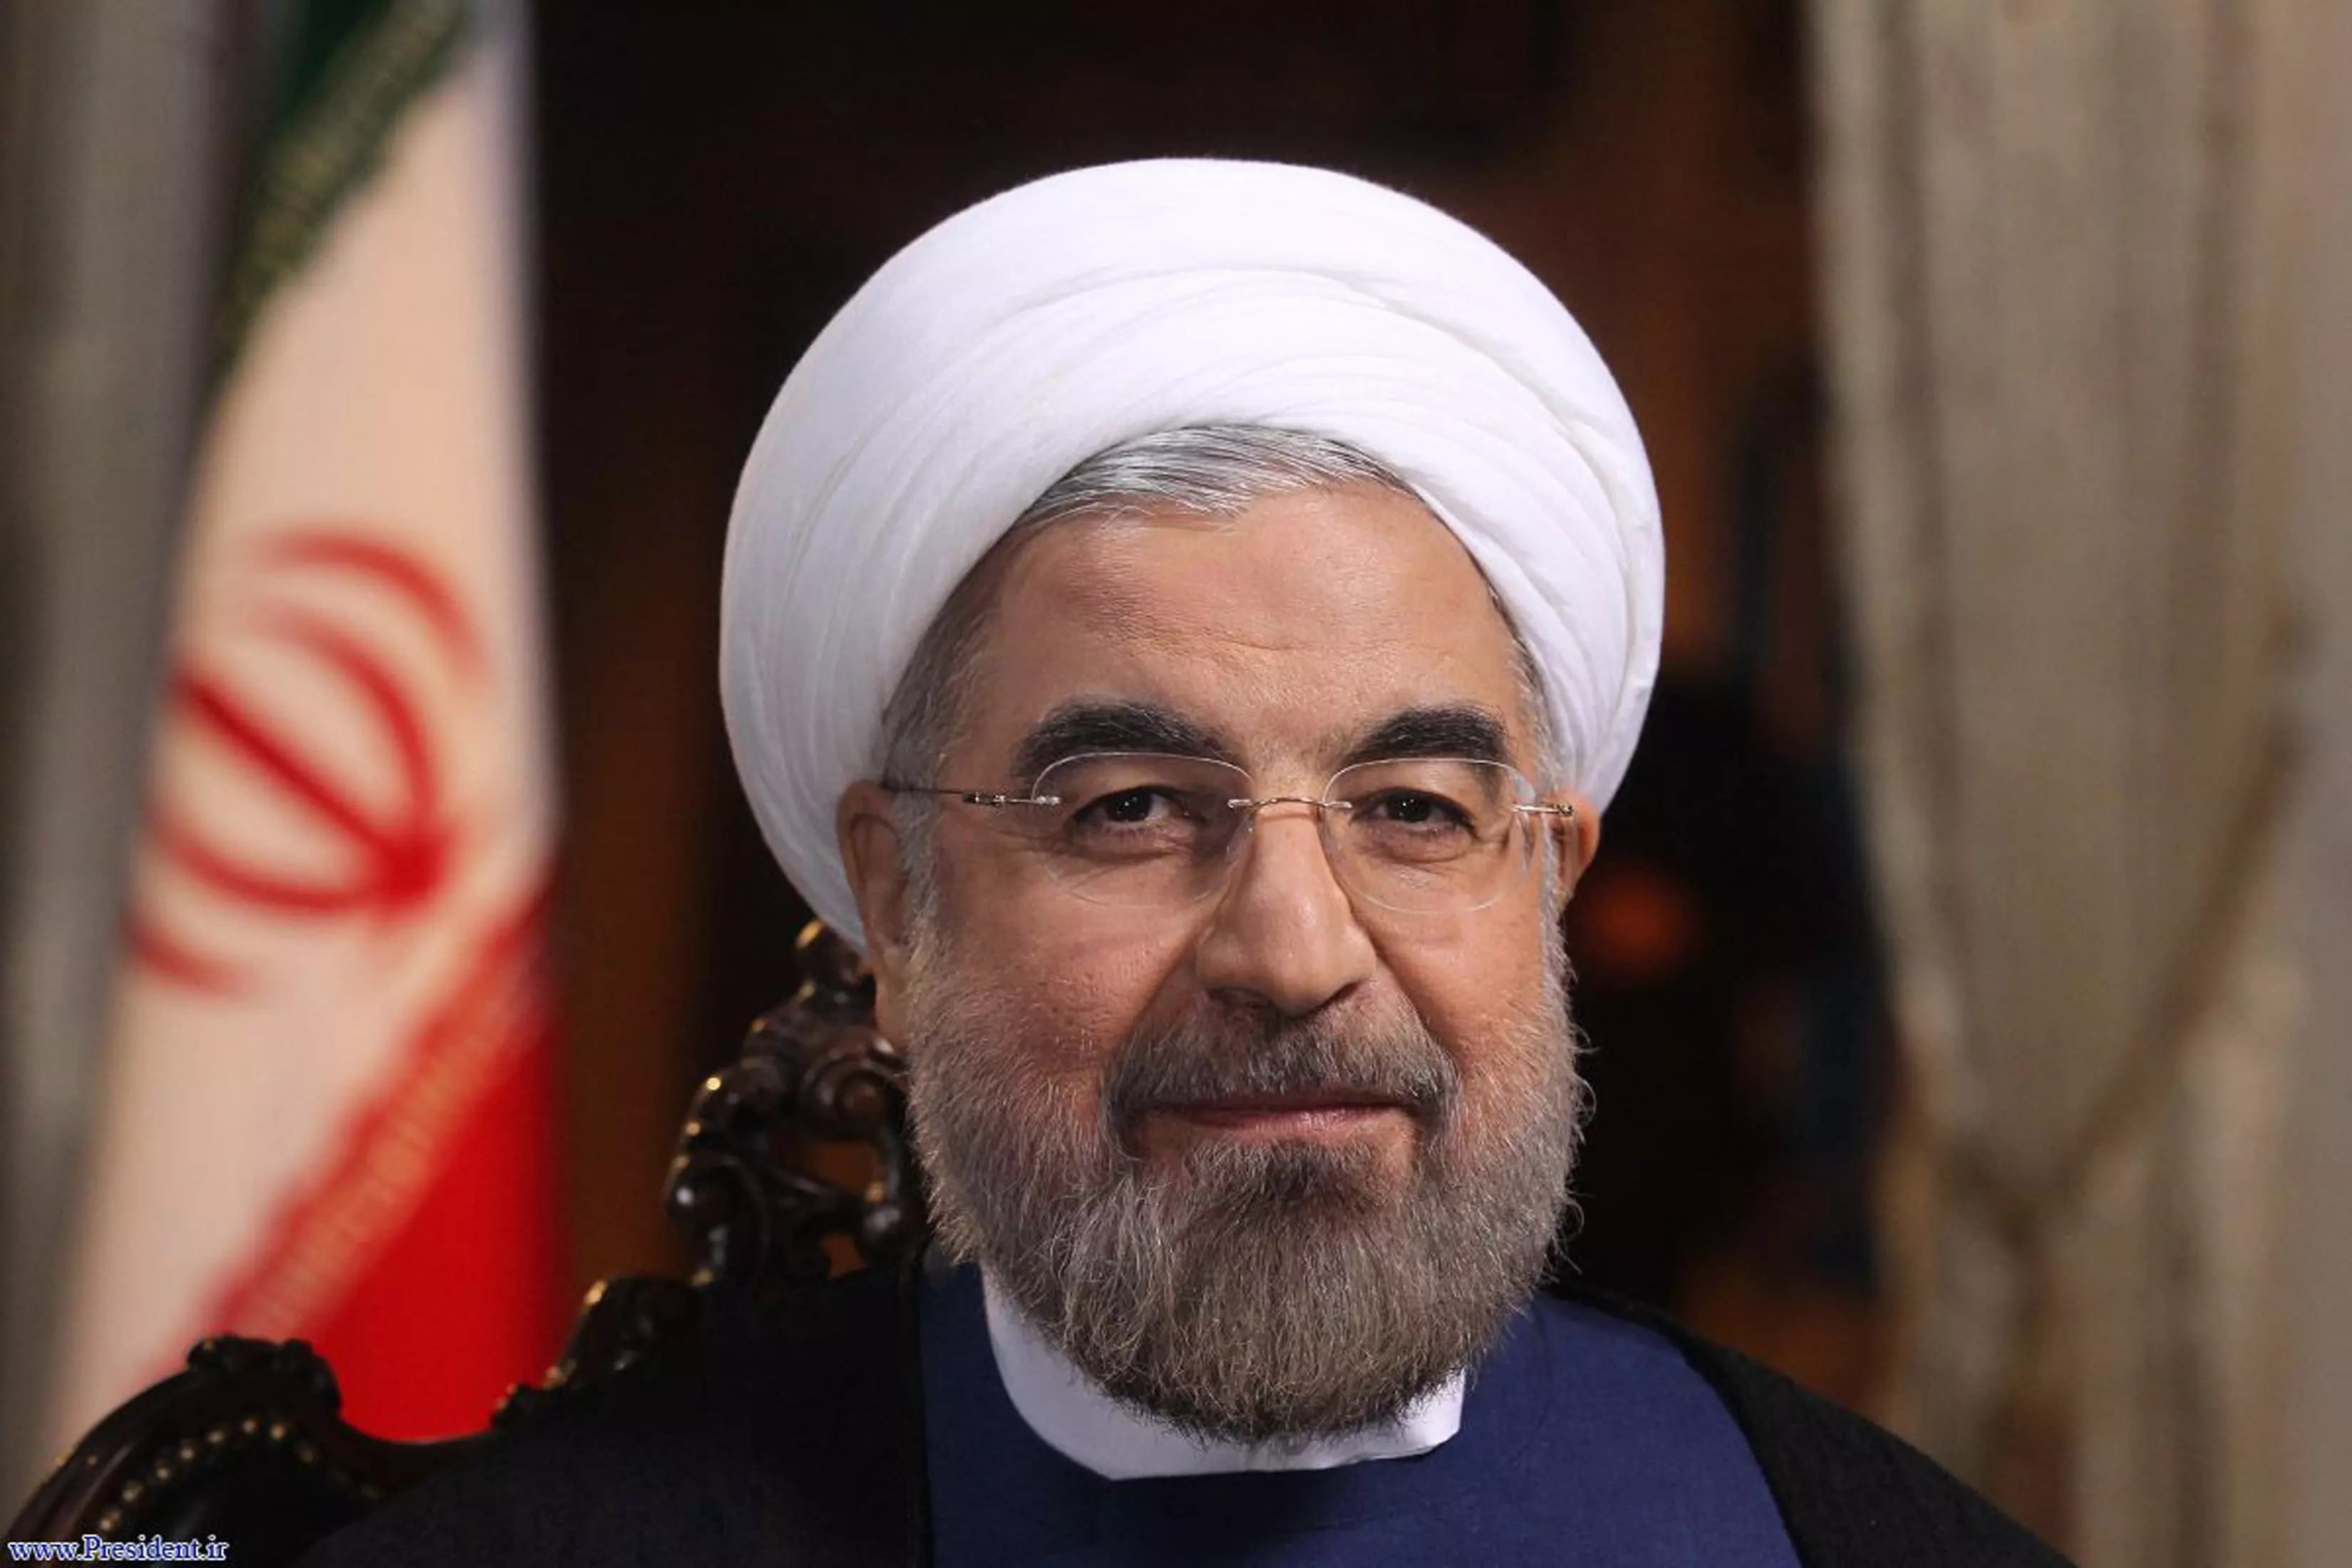 "ב-100%, לא". נשיא איראן רוחאני